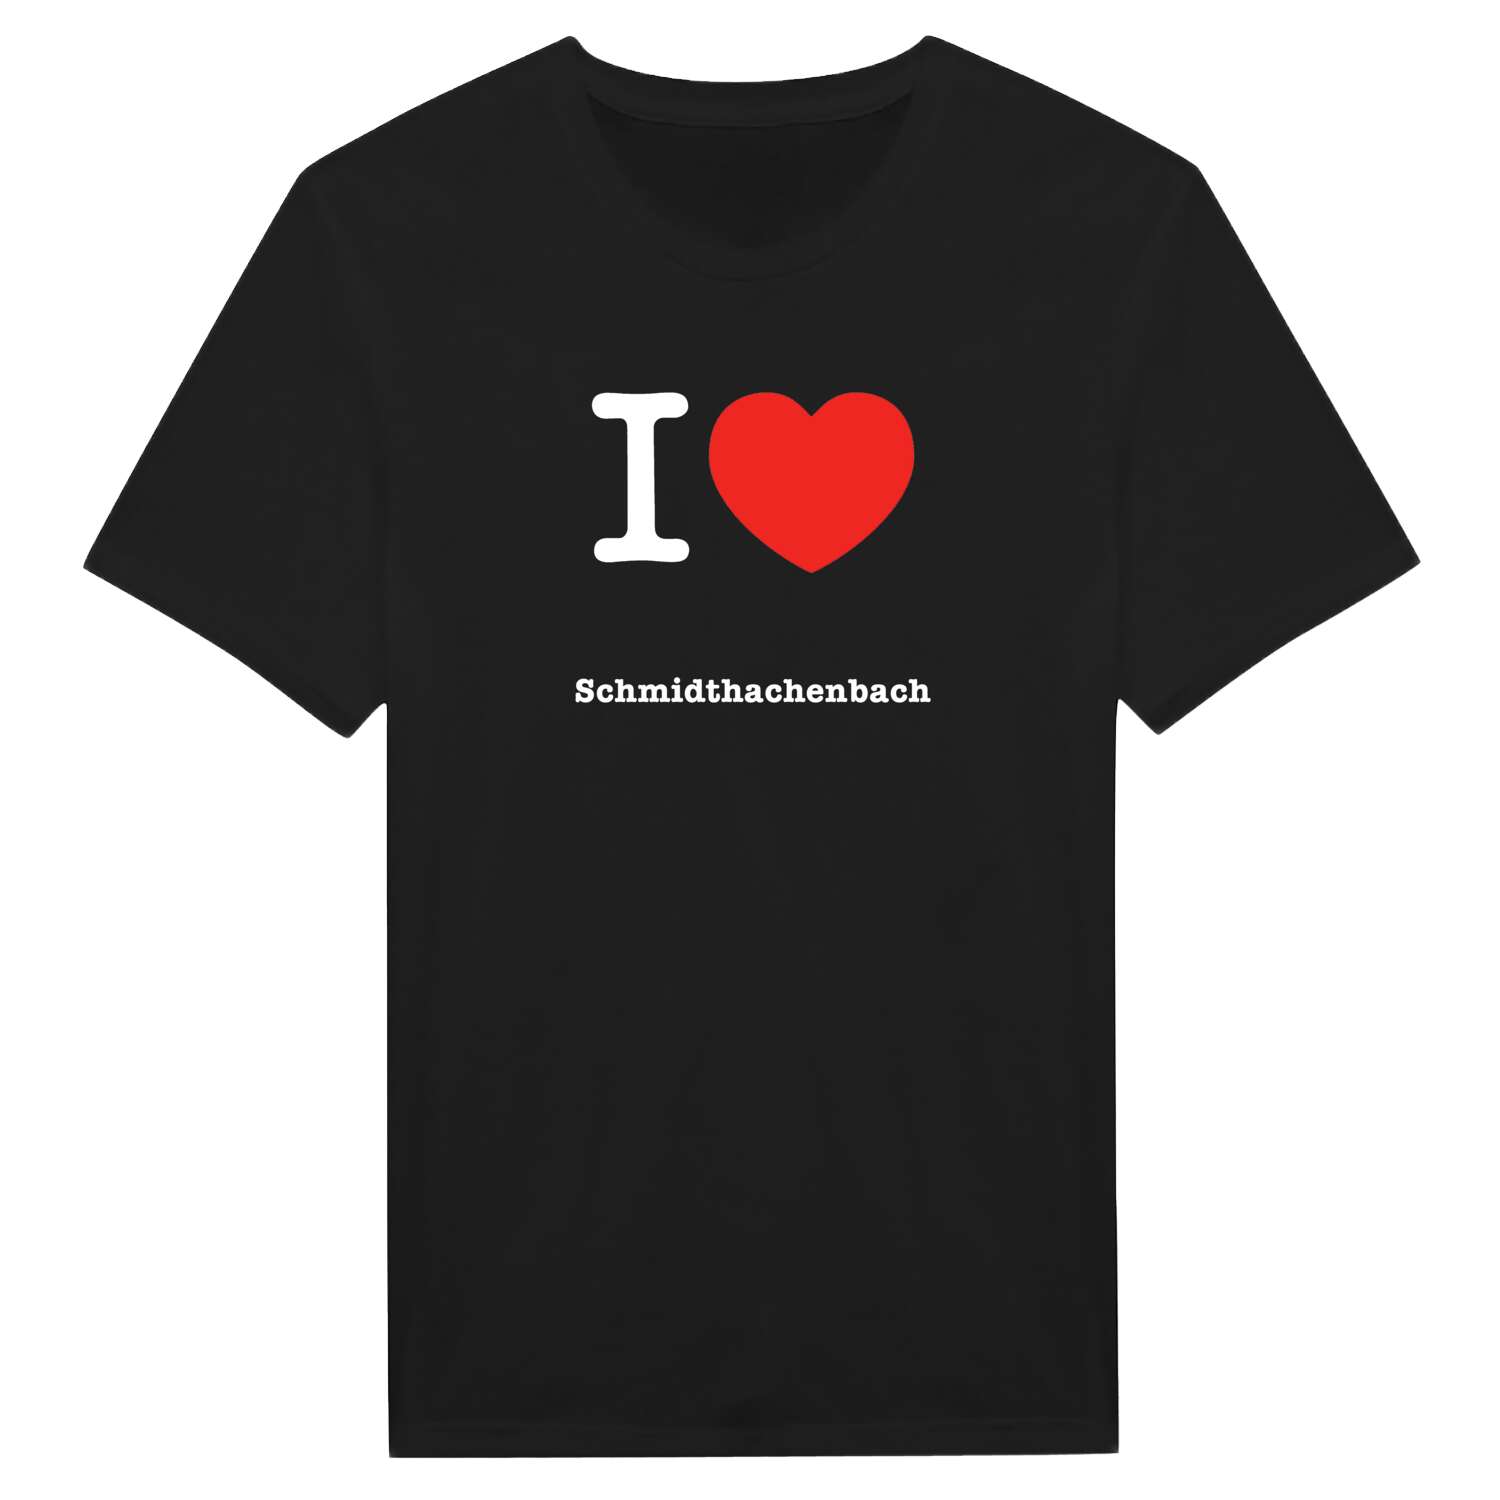 Schmidthachenbach T-Shirt »I love«